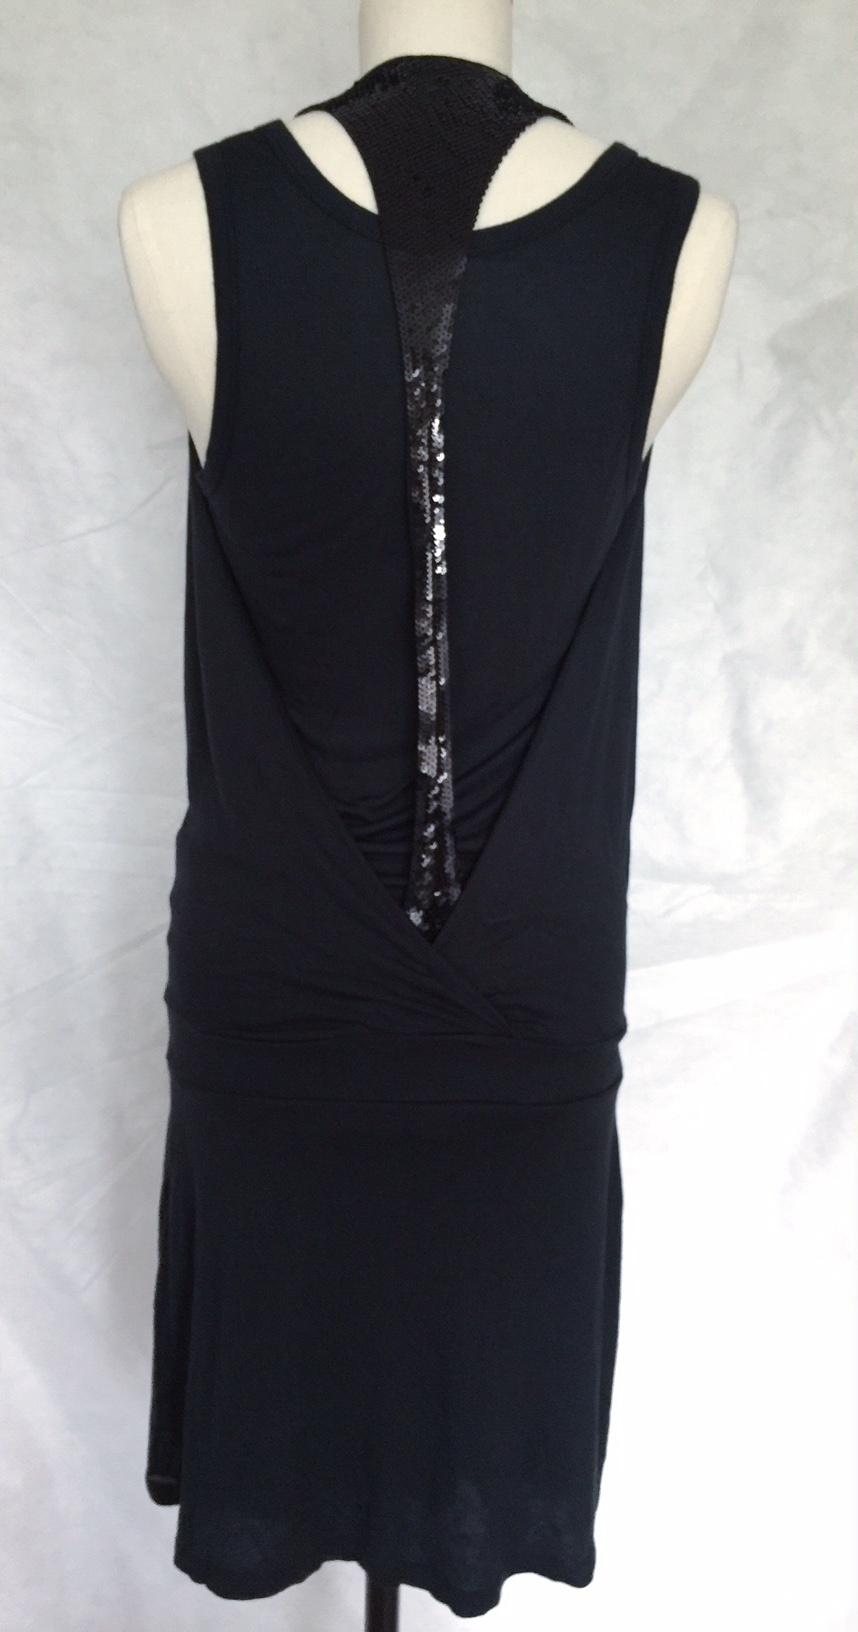 Платье МЕЧТЫ! черное с отделкой из пайеток марки OUI SET рамзер 42-44